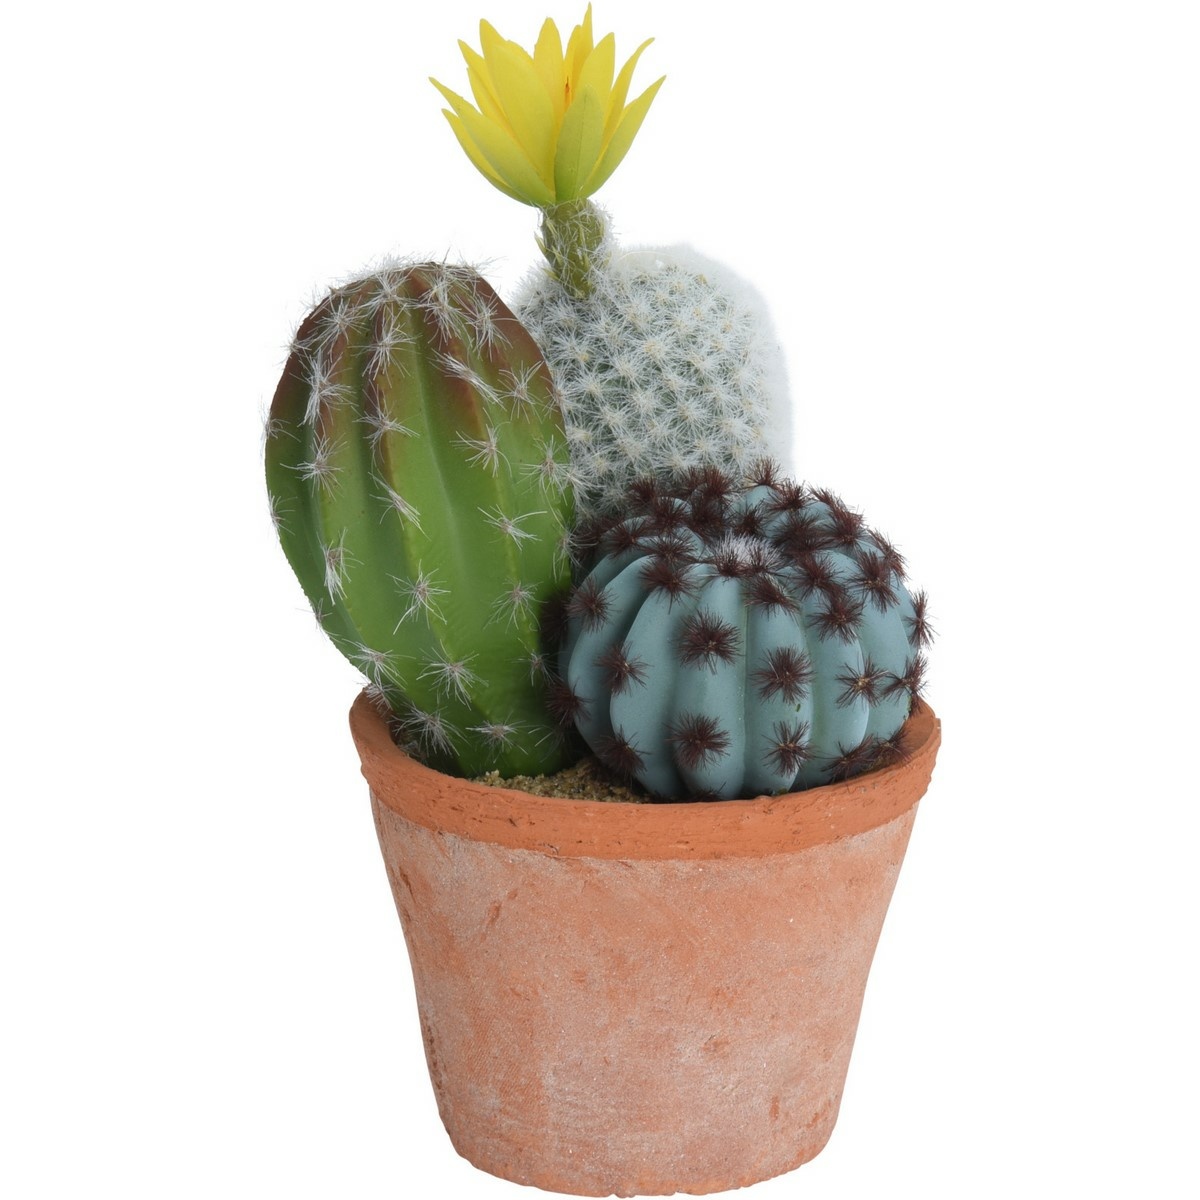 Umělý kaktus v květináči, 10 x 16 x 20 cm